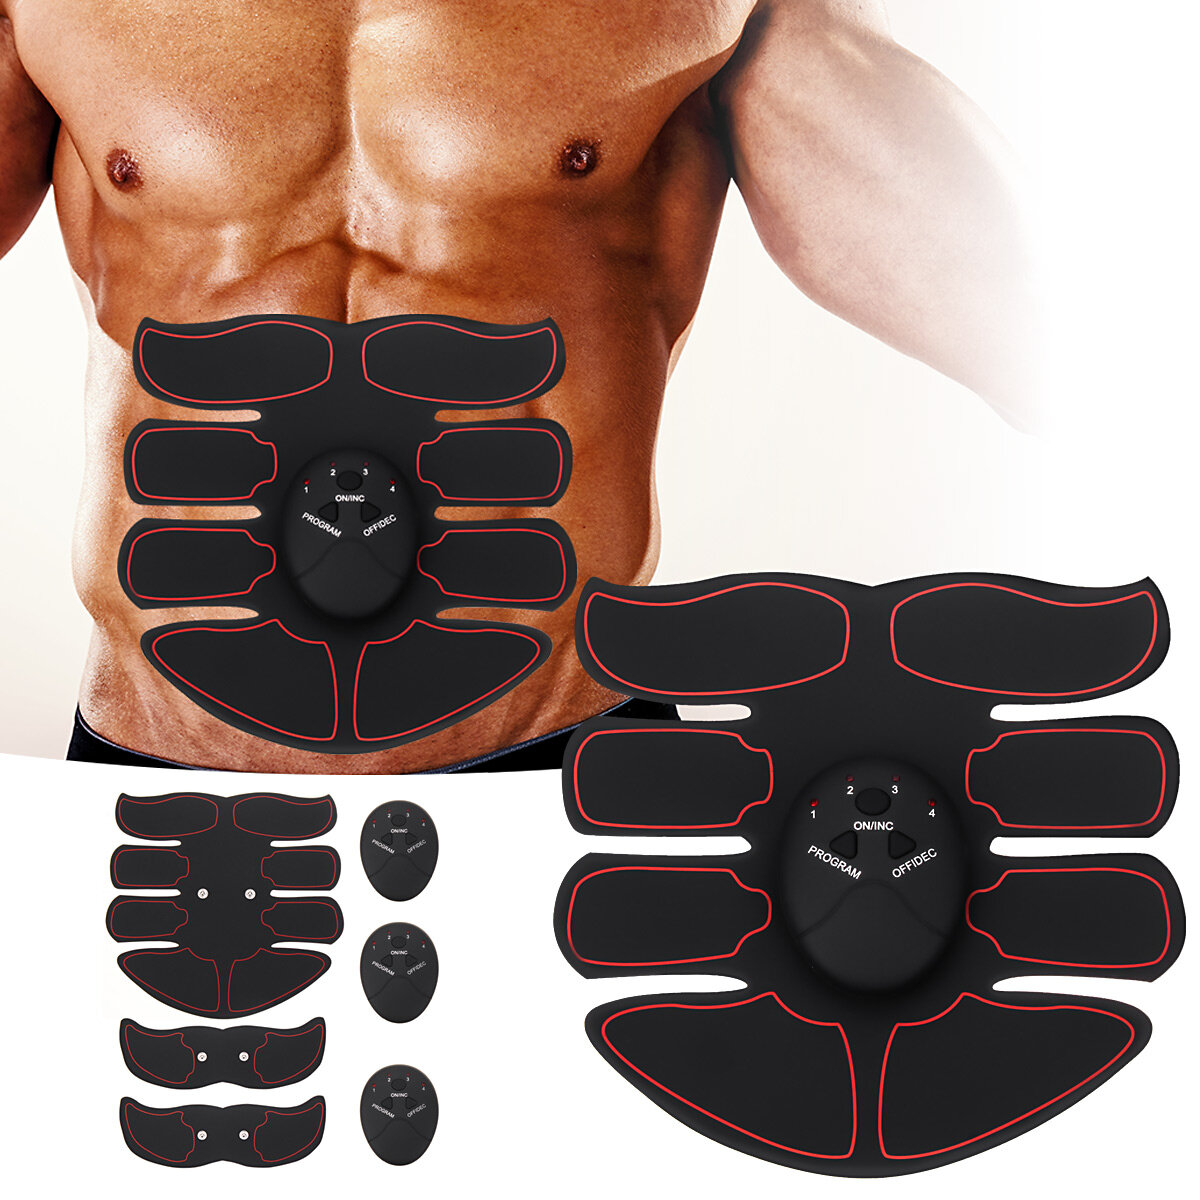 

6-режимный набор стимуляторов мышц живота ABS EMS Trainer Body Фитнес USB аккумуляторная оборудование для коррекции фигу